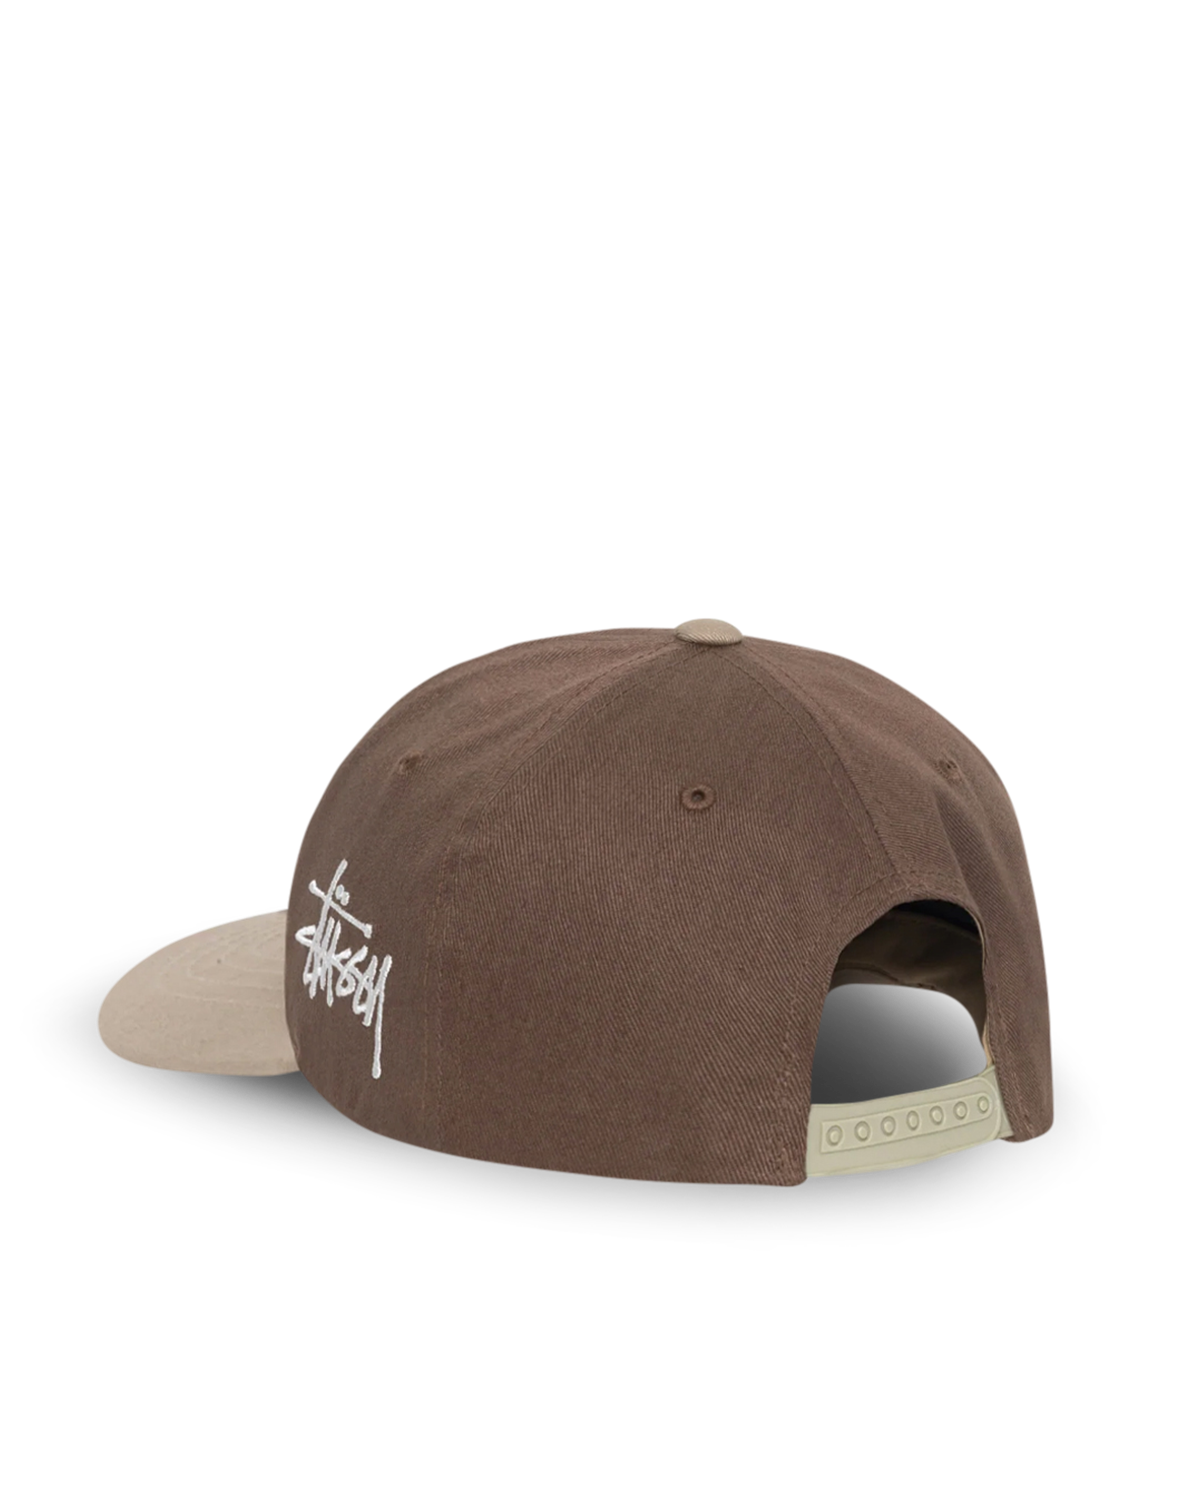 Chenille S Low Pro Cap Stüssy Headwear Caps Brown